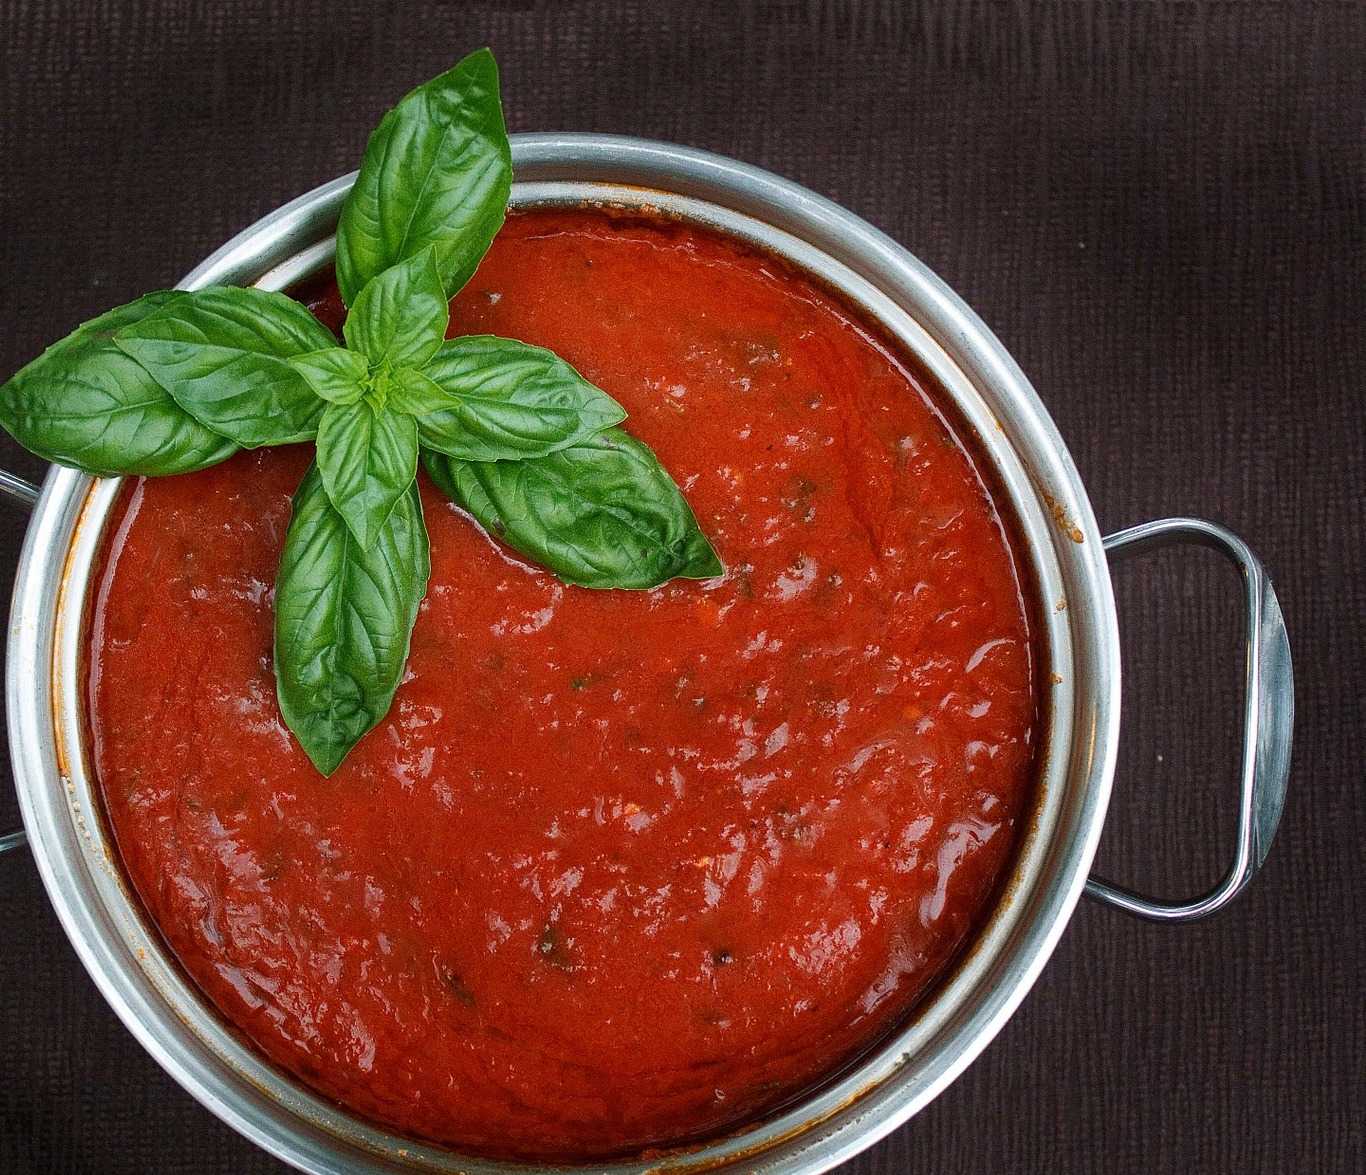 томатный соус из помидоров для пиццы в домашних условиях фото 80